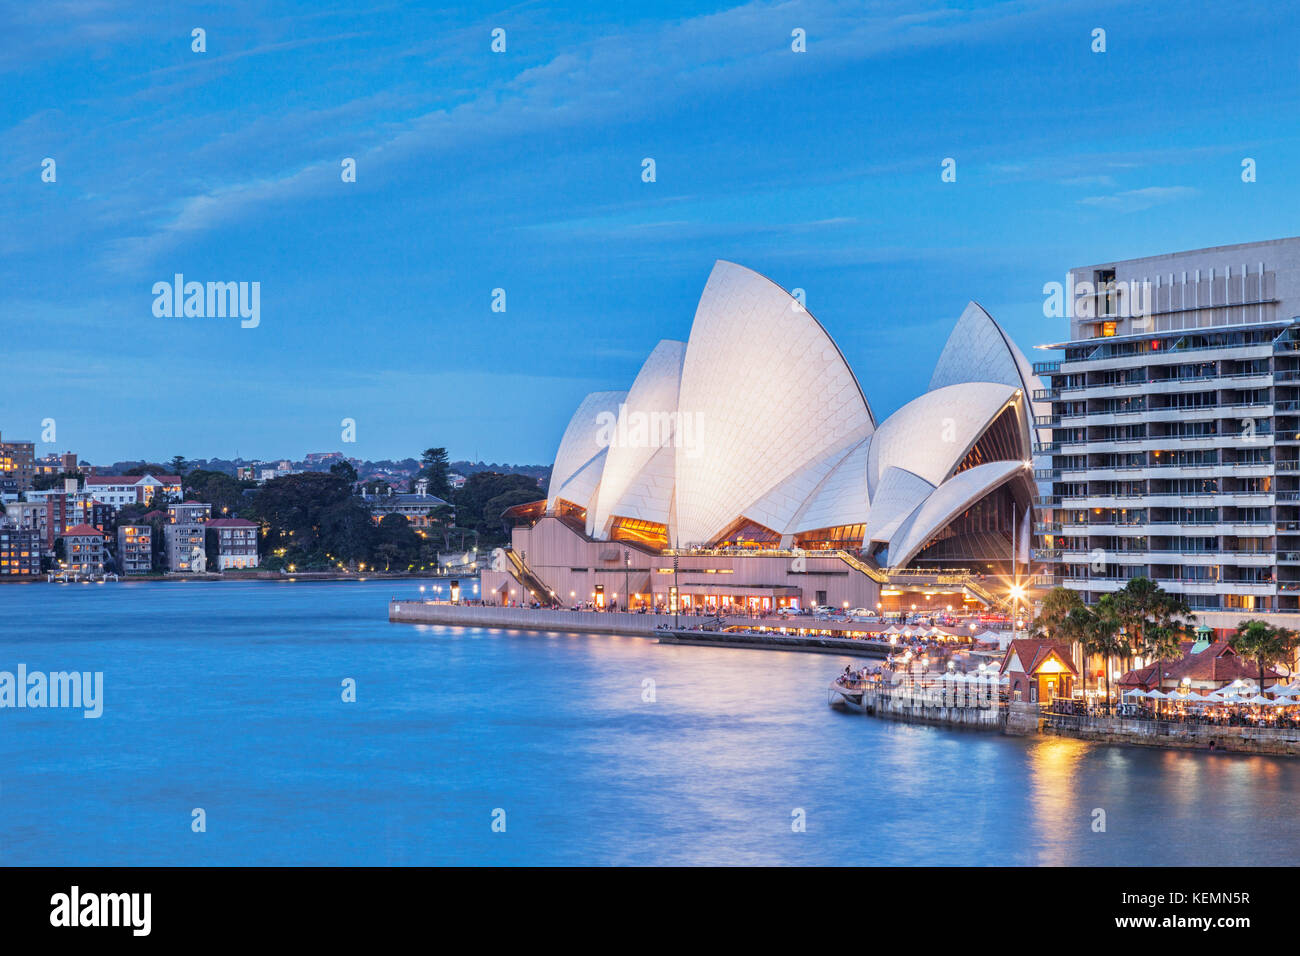 Opéra de Sydney illuminée au crépuscule, l'immeuble à côté, il est connu sous le nom de grille-pain. Banque D'Images